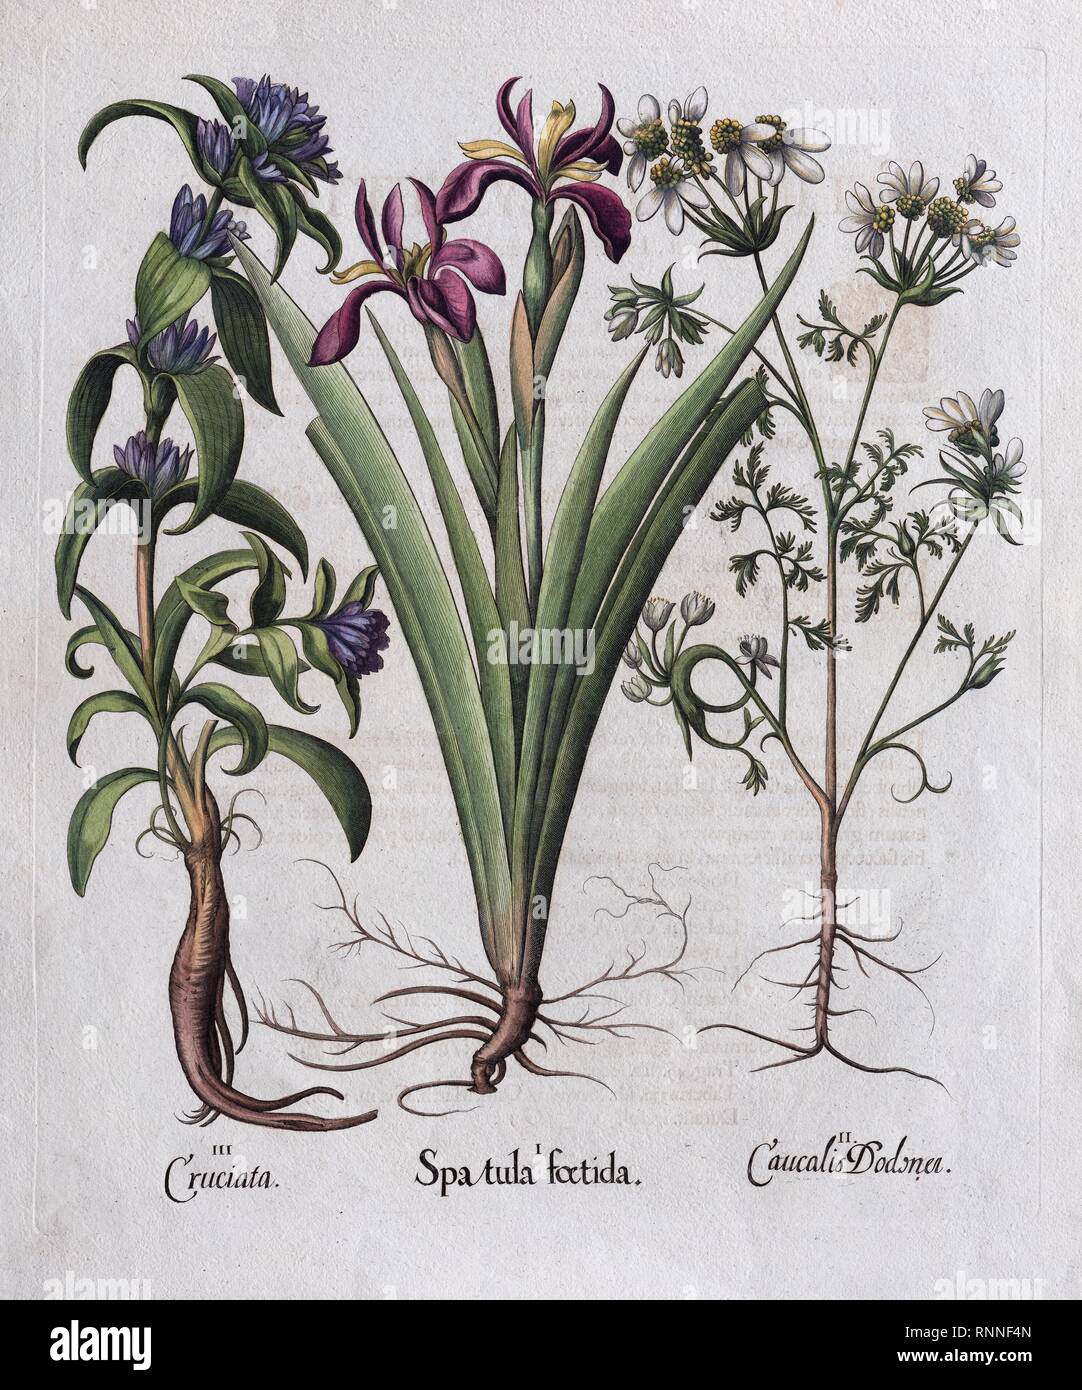 Iris fétide (Spatule foetida), coloriés à la main par Basilius Besler gravure sur cuivre, de Hortus Eystettensis, 1613, Allemagne Banque D'Images